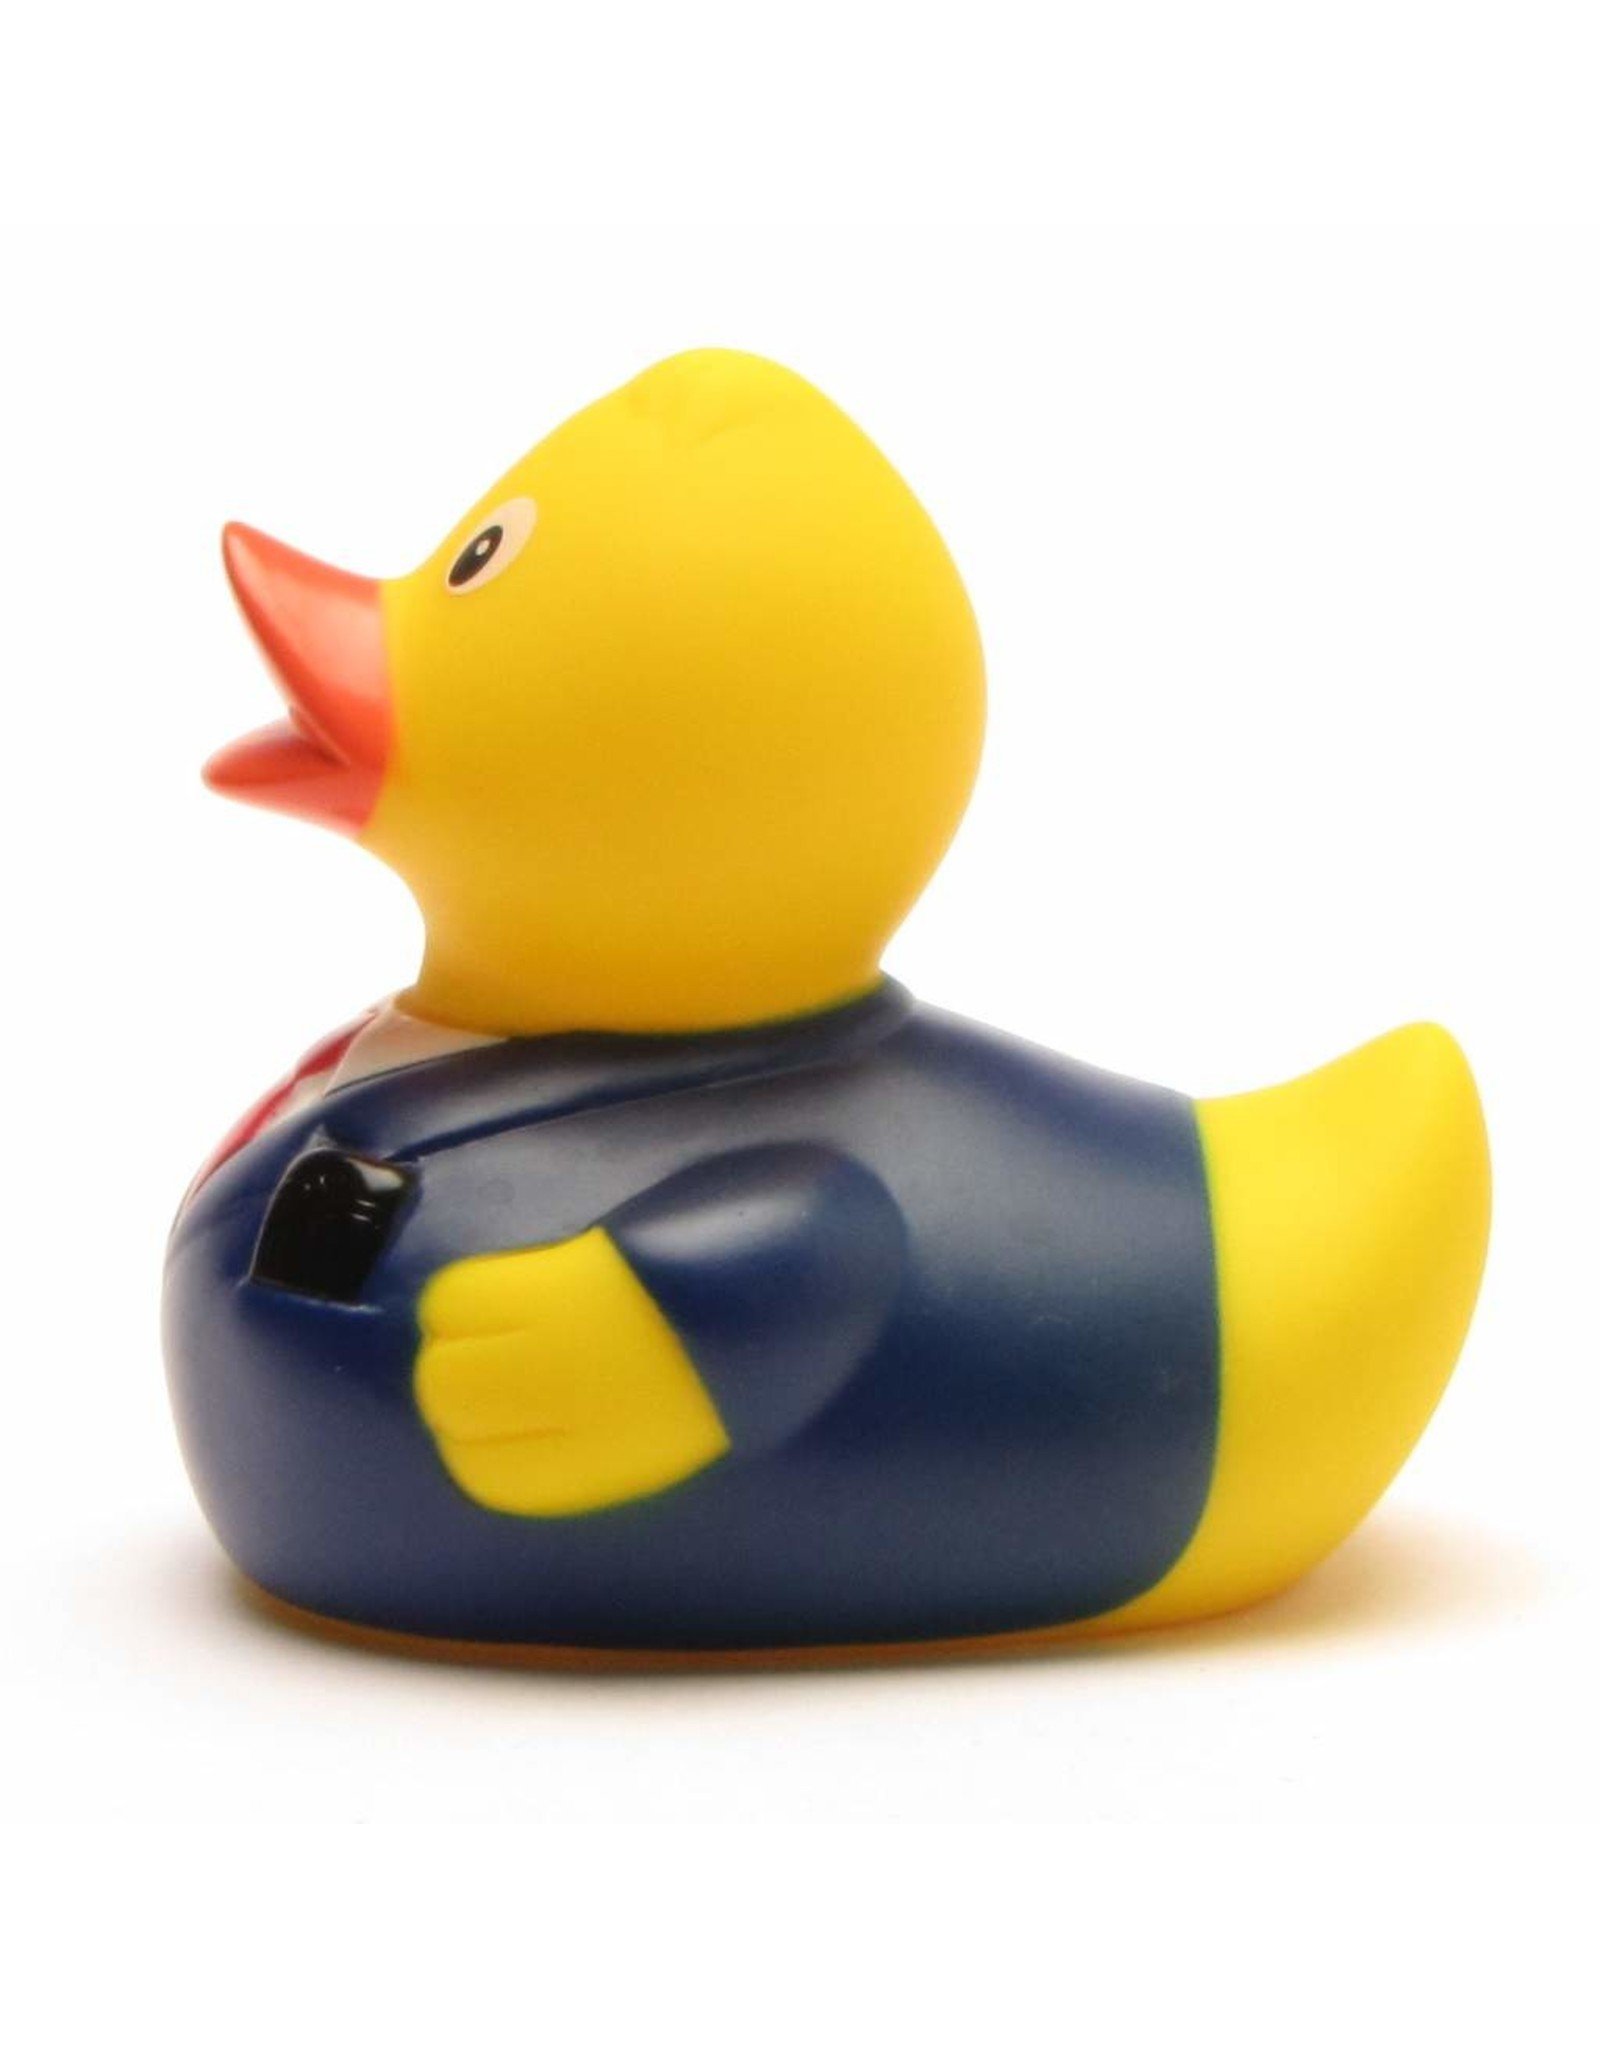 Business Man Rubber Duck